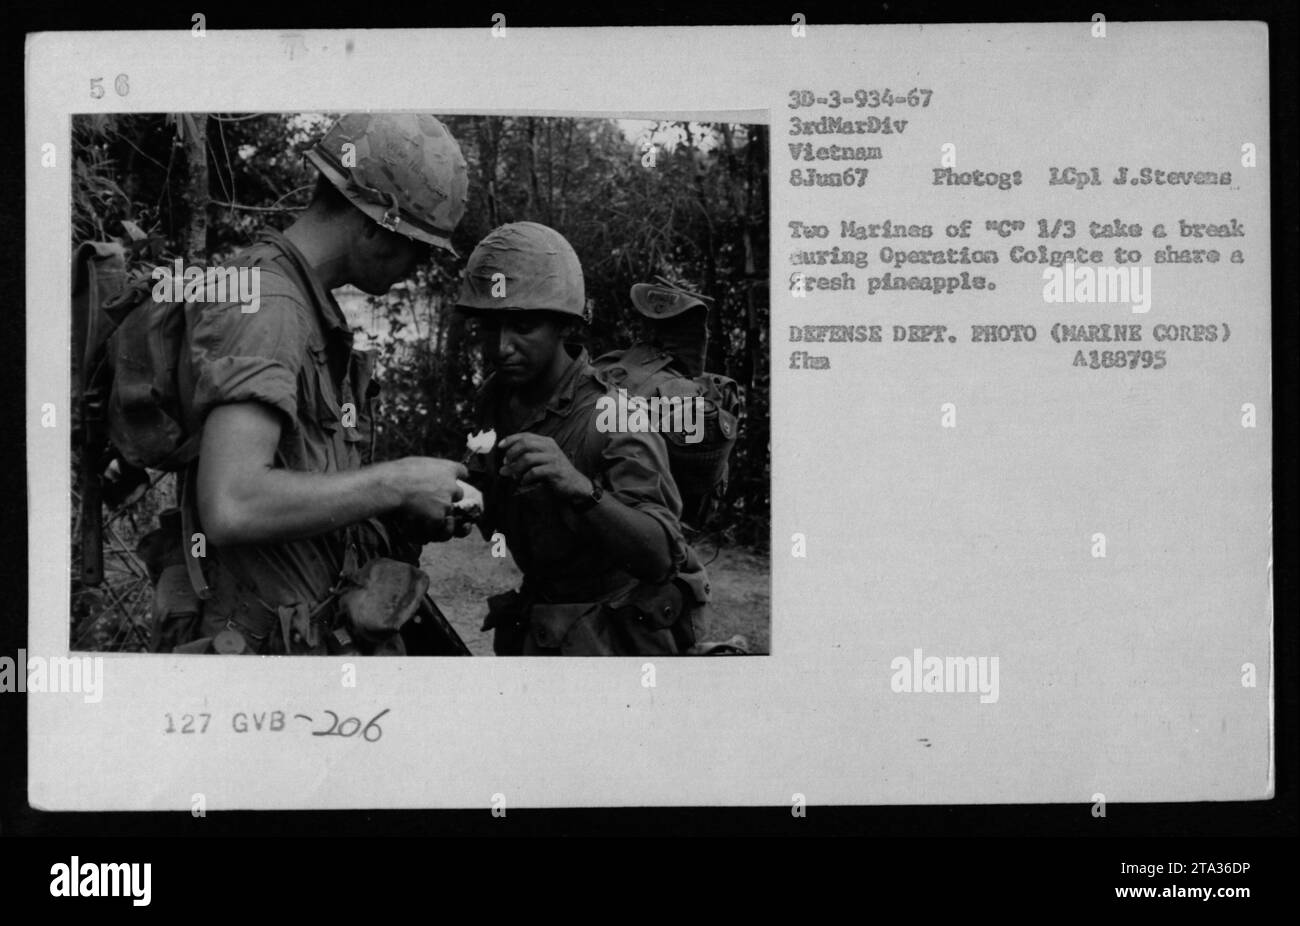 Deux Marines font une pause lors de l’opération Colgate le 8 juin 1967 au Vietnam pour déguster un ananas frais. Cette photographie, prise par le lcpl J. Stevens, montre les réalités de soldats qui prennent une pause et profitent d’un bref moment de répit au milieu des activités militaires. Banque D'Images